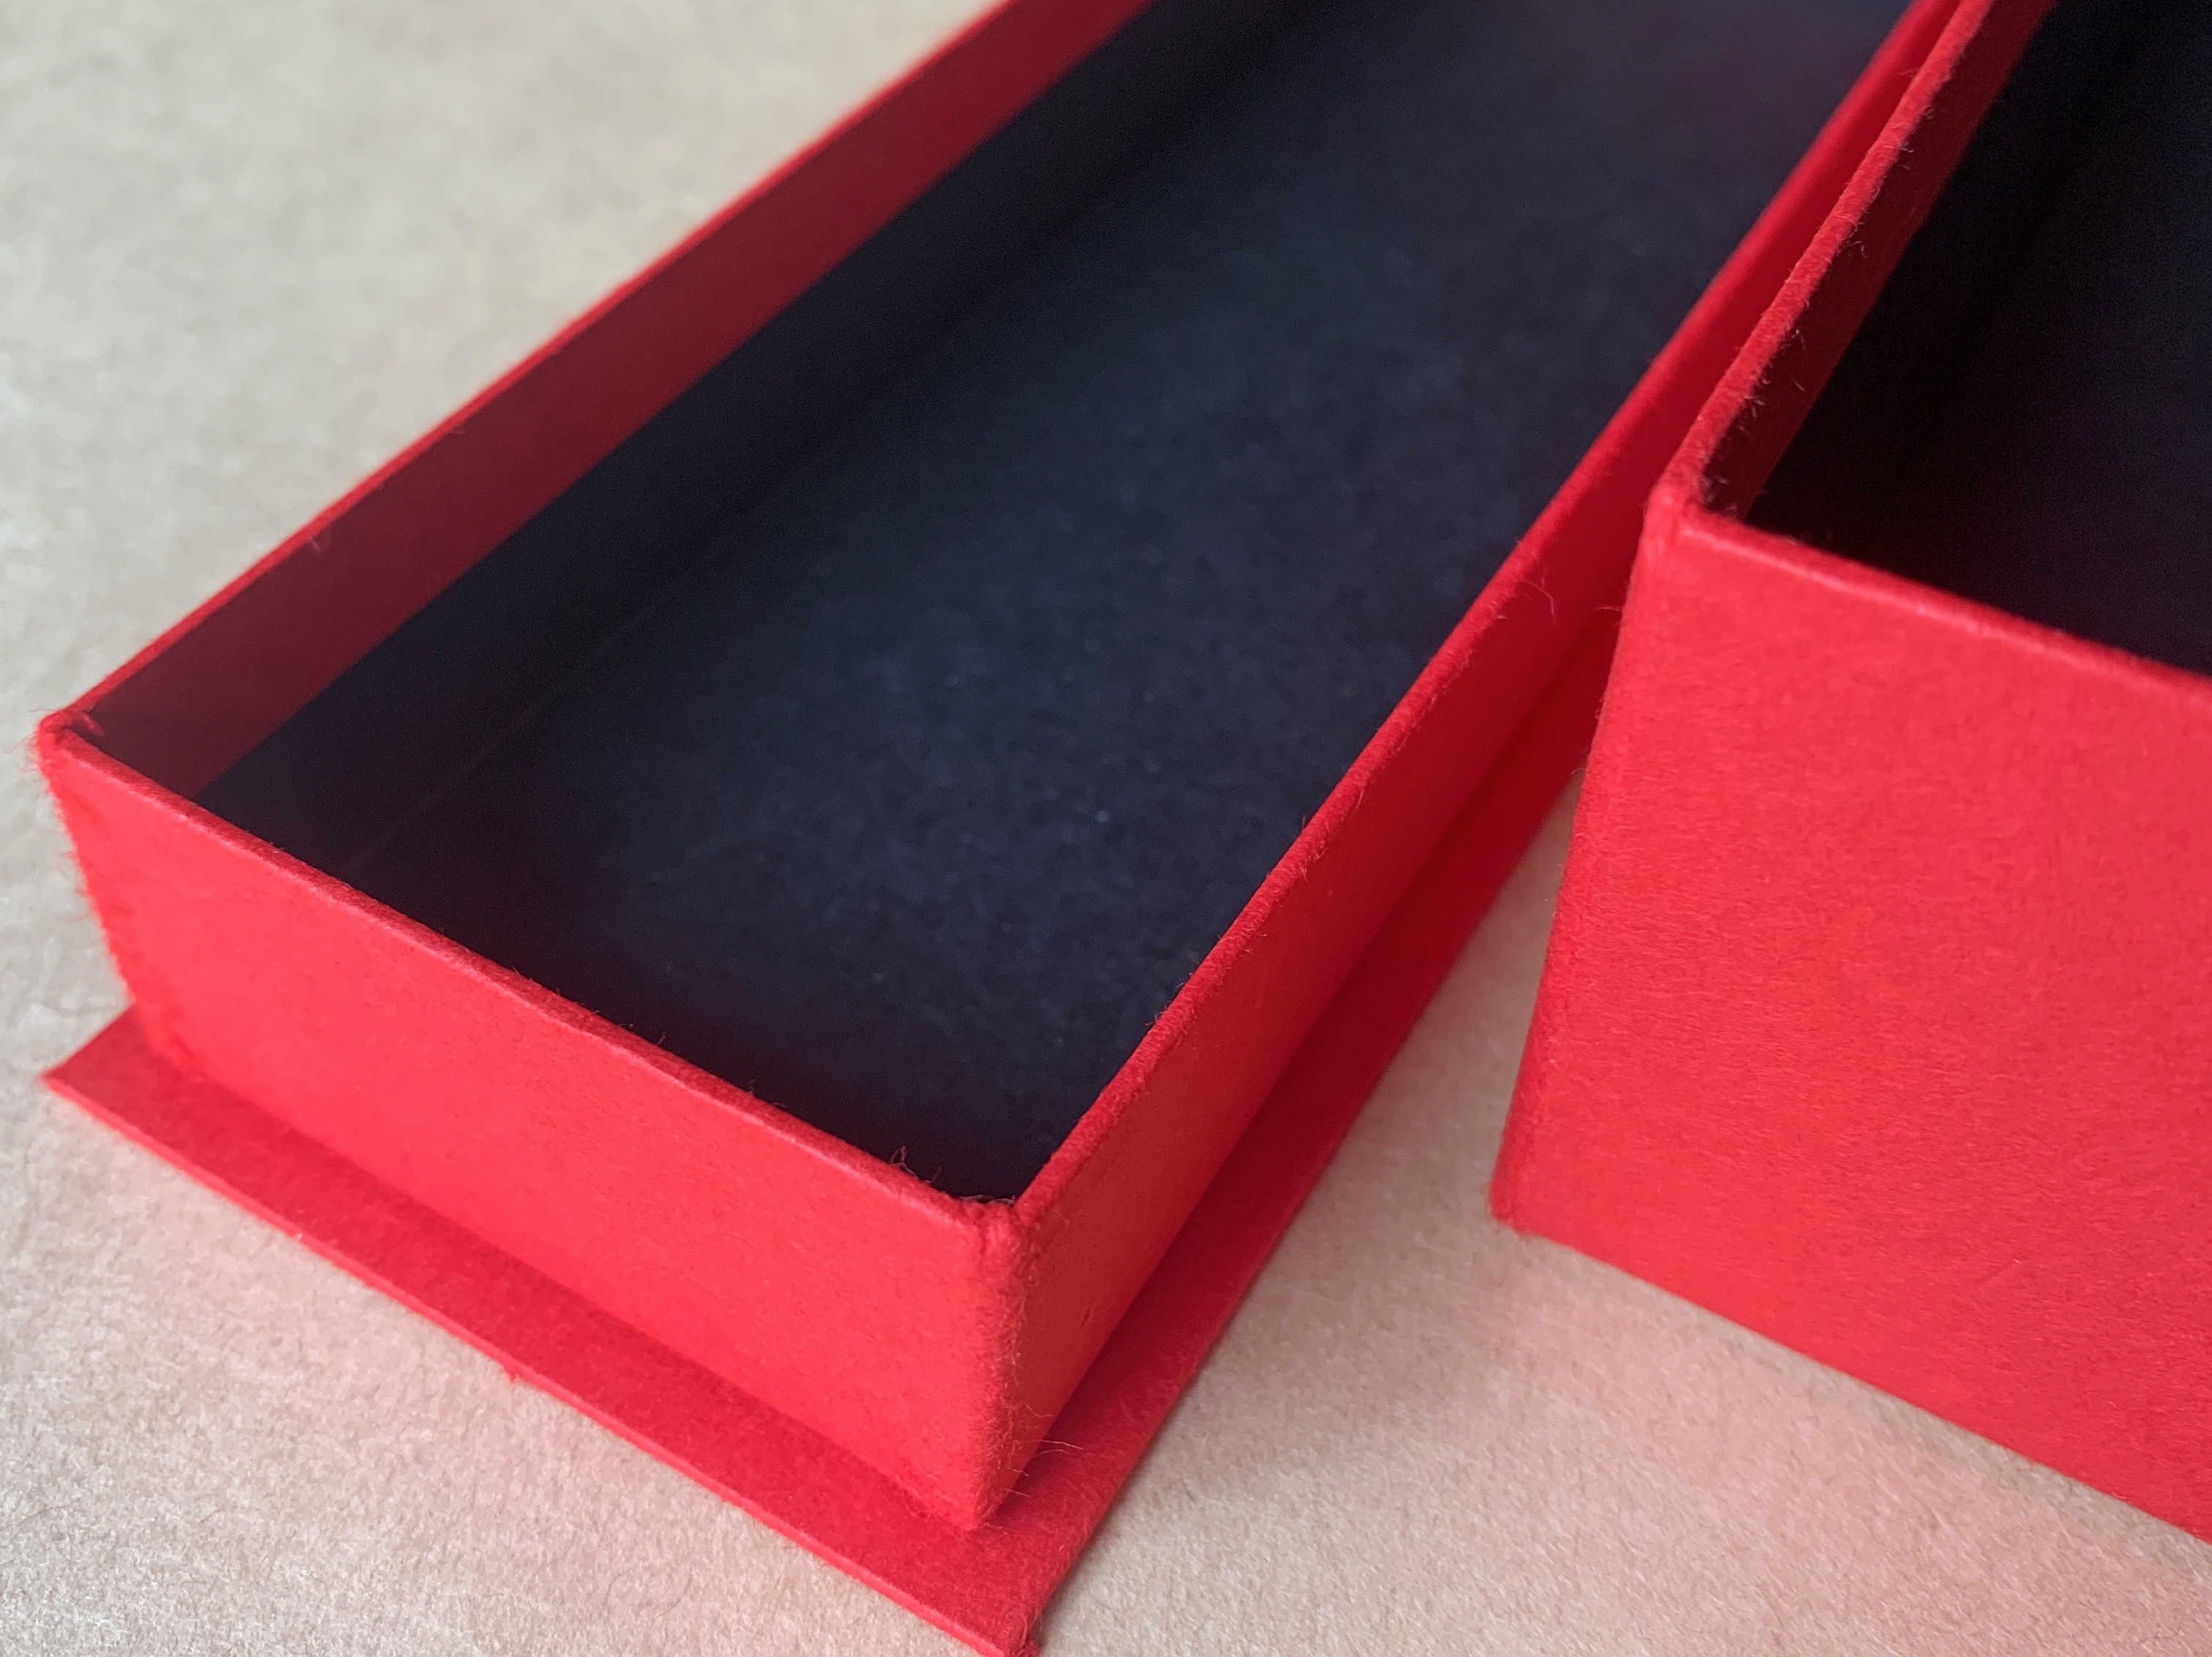 新商品用の貼箱は通常のかぶせ型に底板が付いた形状になりました